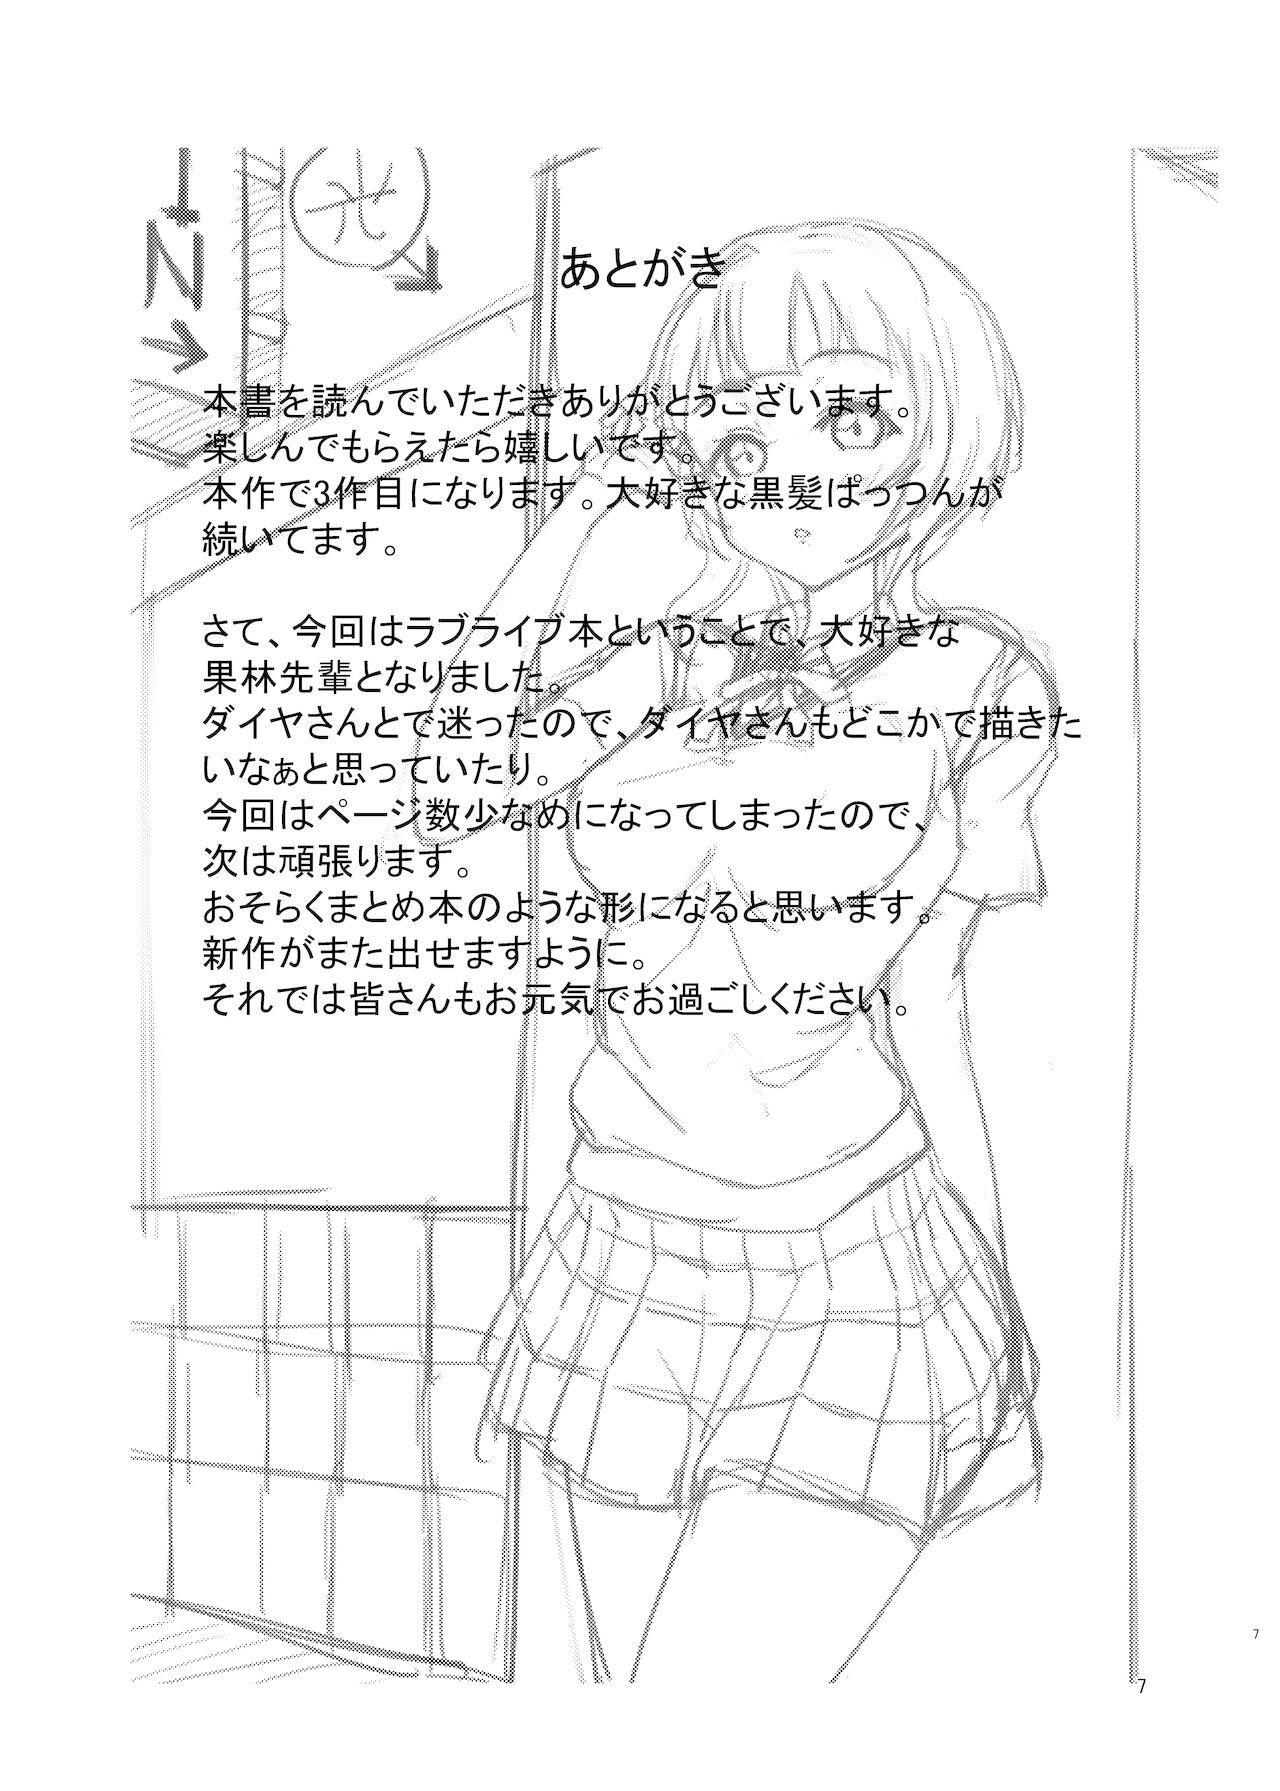 Bizarre Chat errant - Love live nijigasaki high school idol club 8teenxxx - Page 7